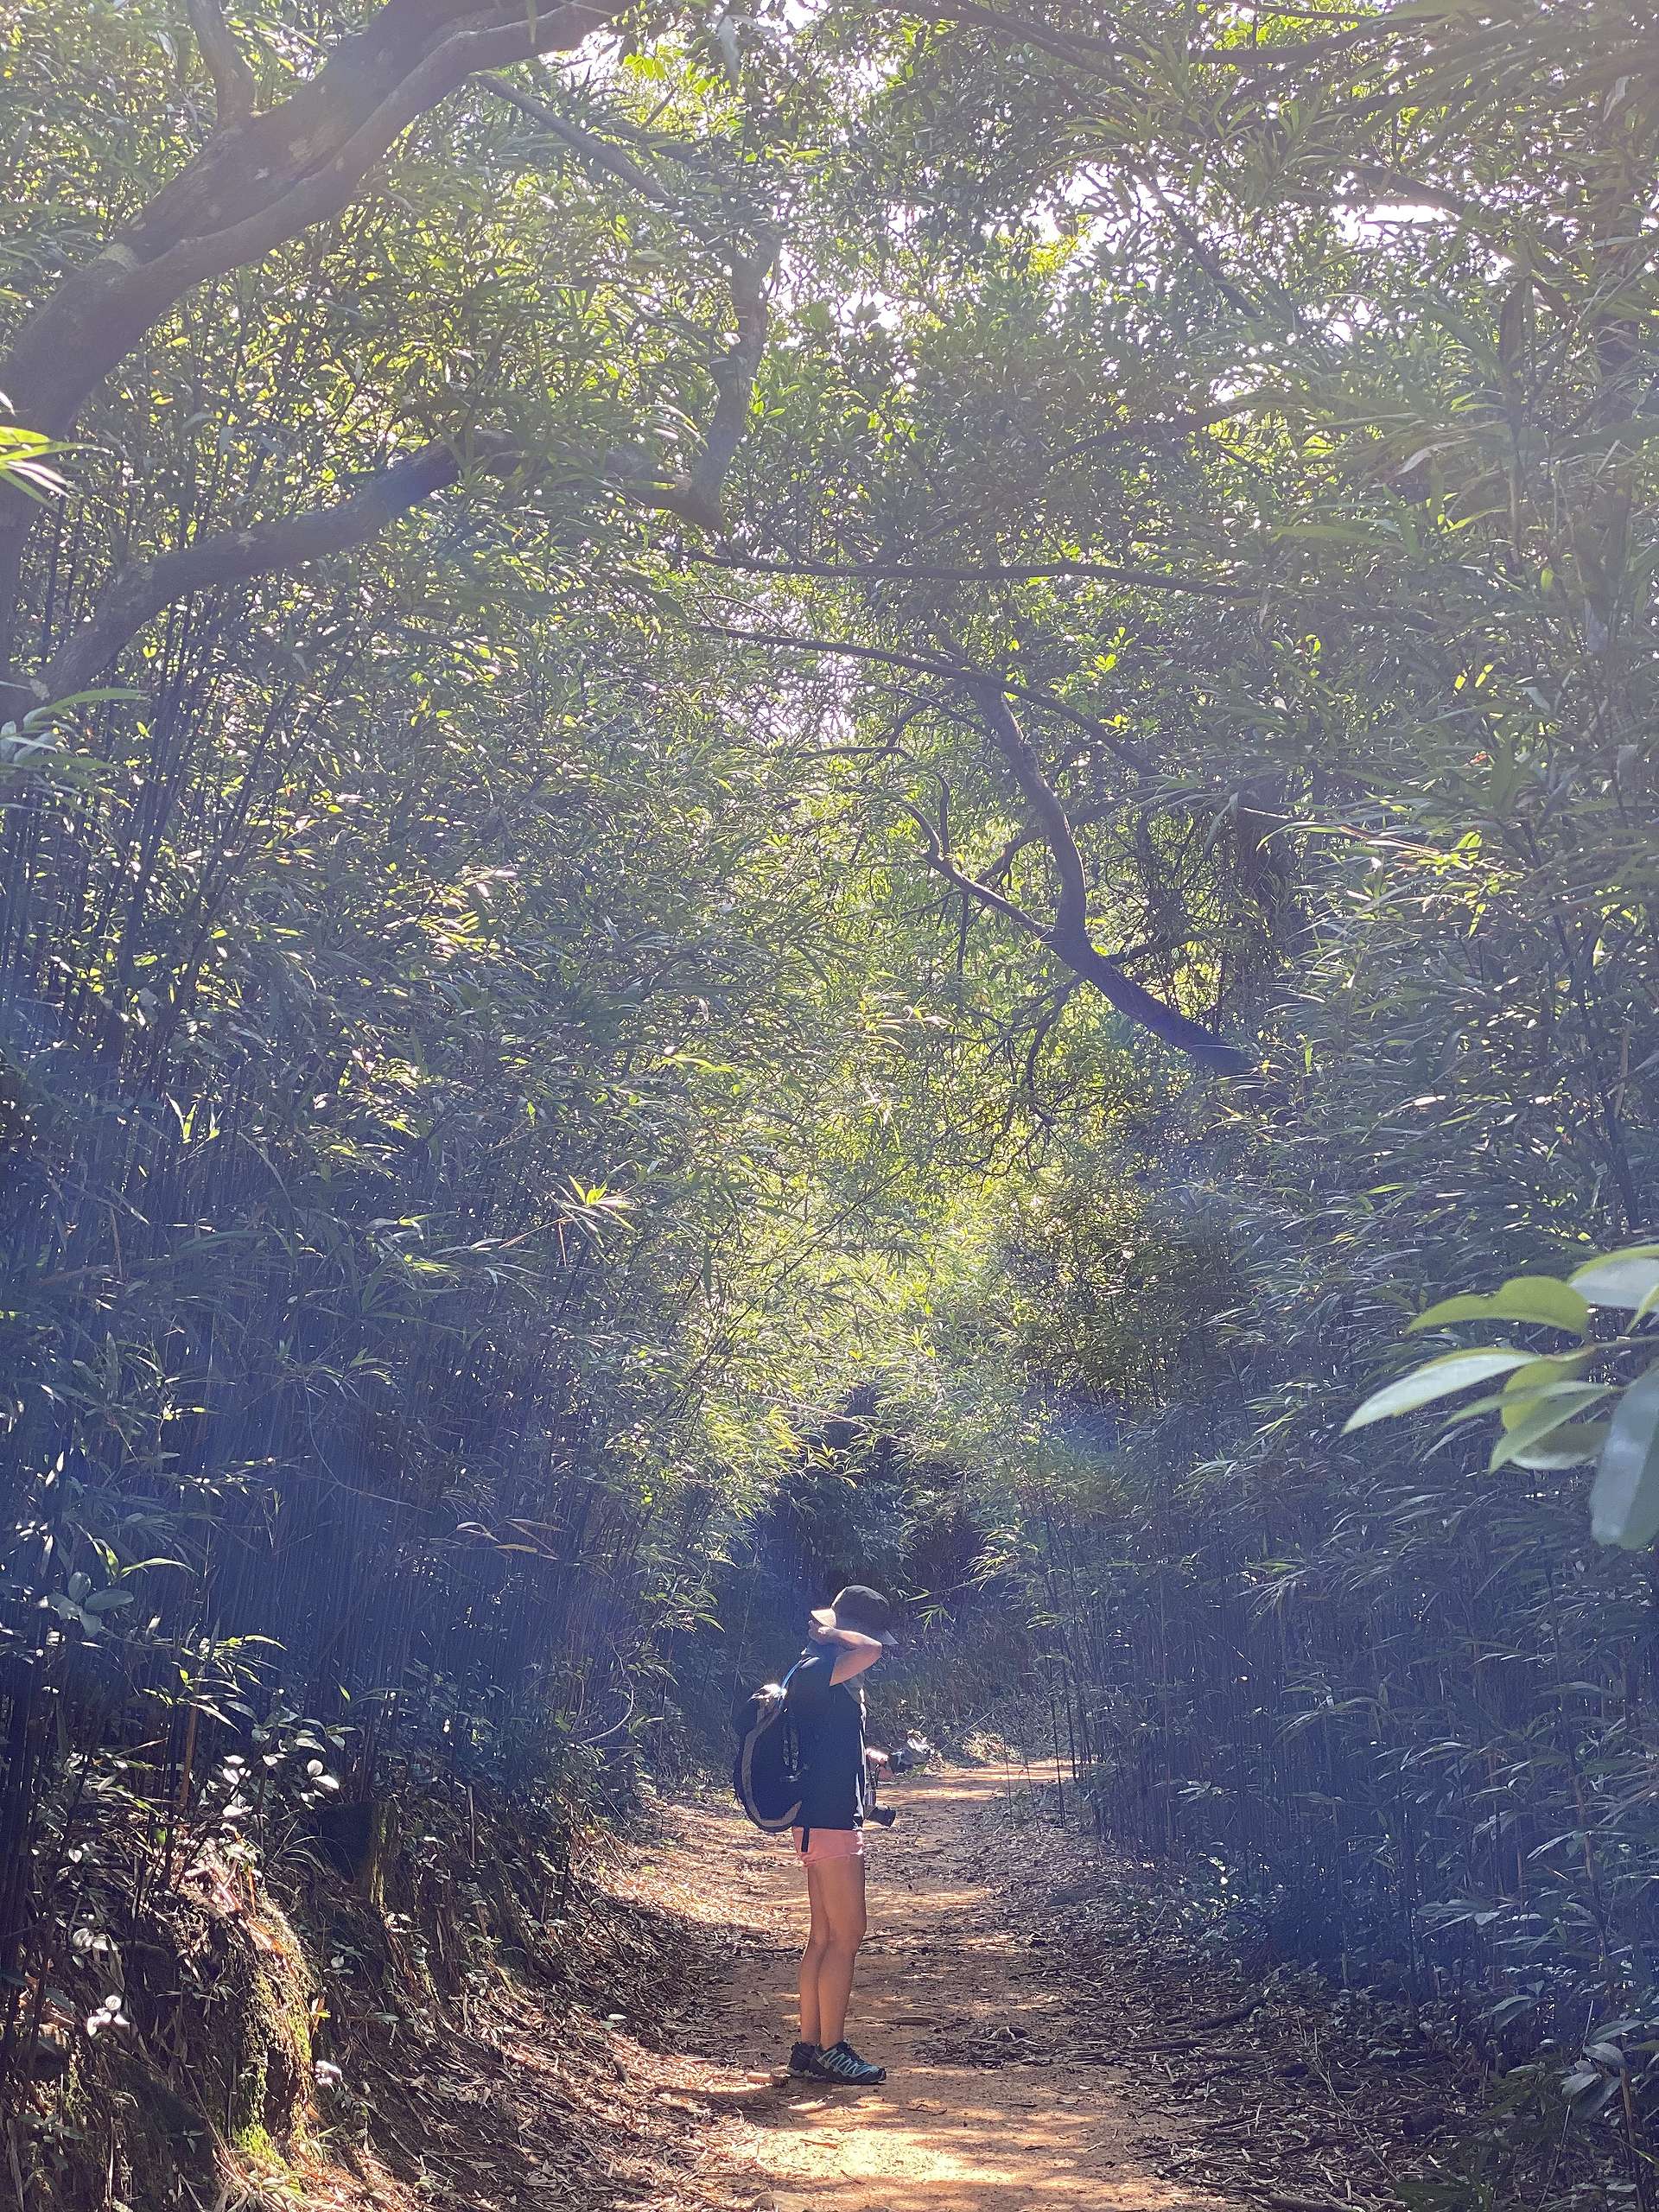 接上山徑後會經過一片小竹林，感覺清幽。© 香港山女